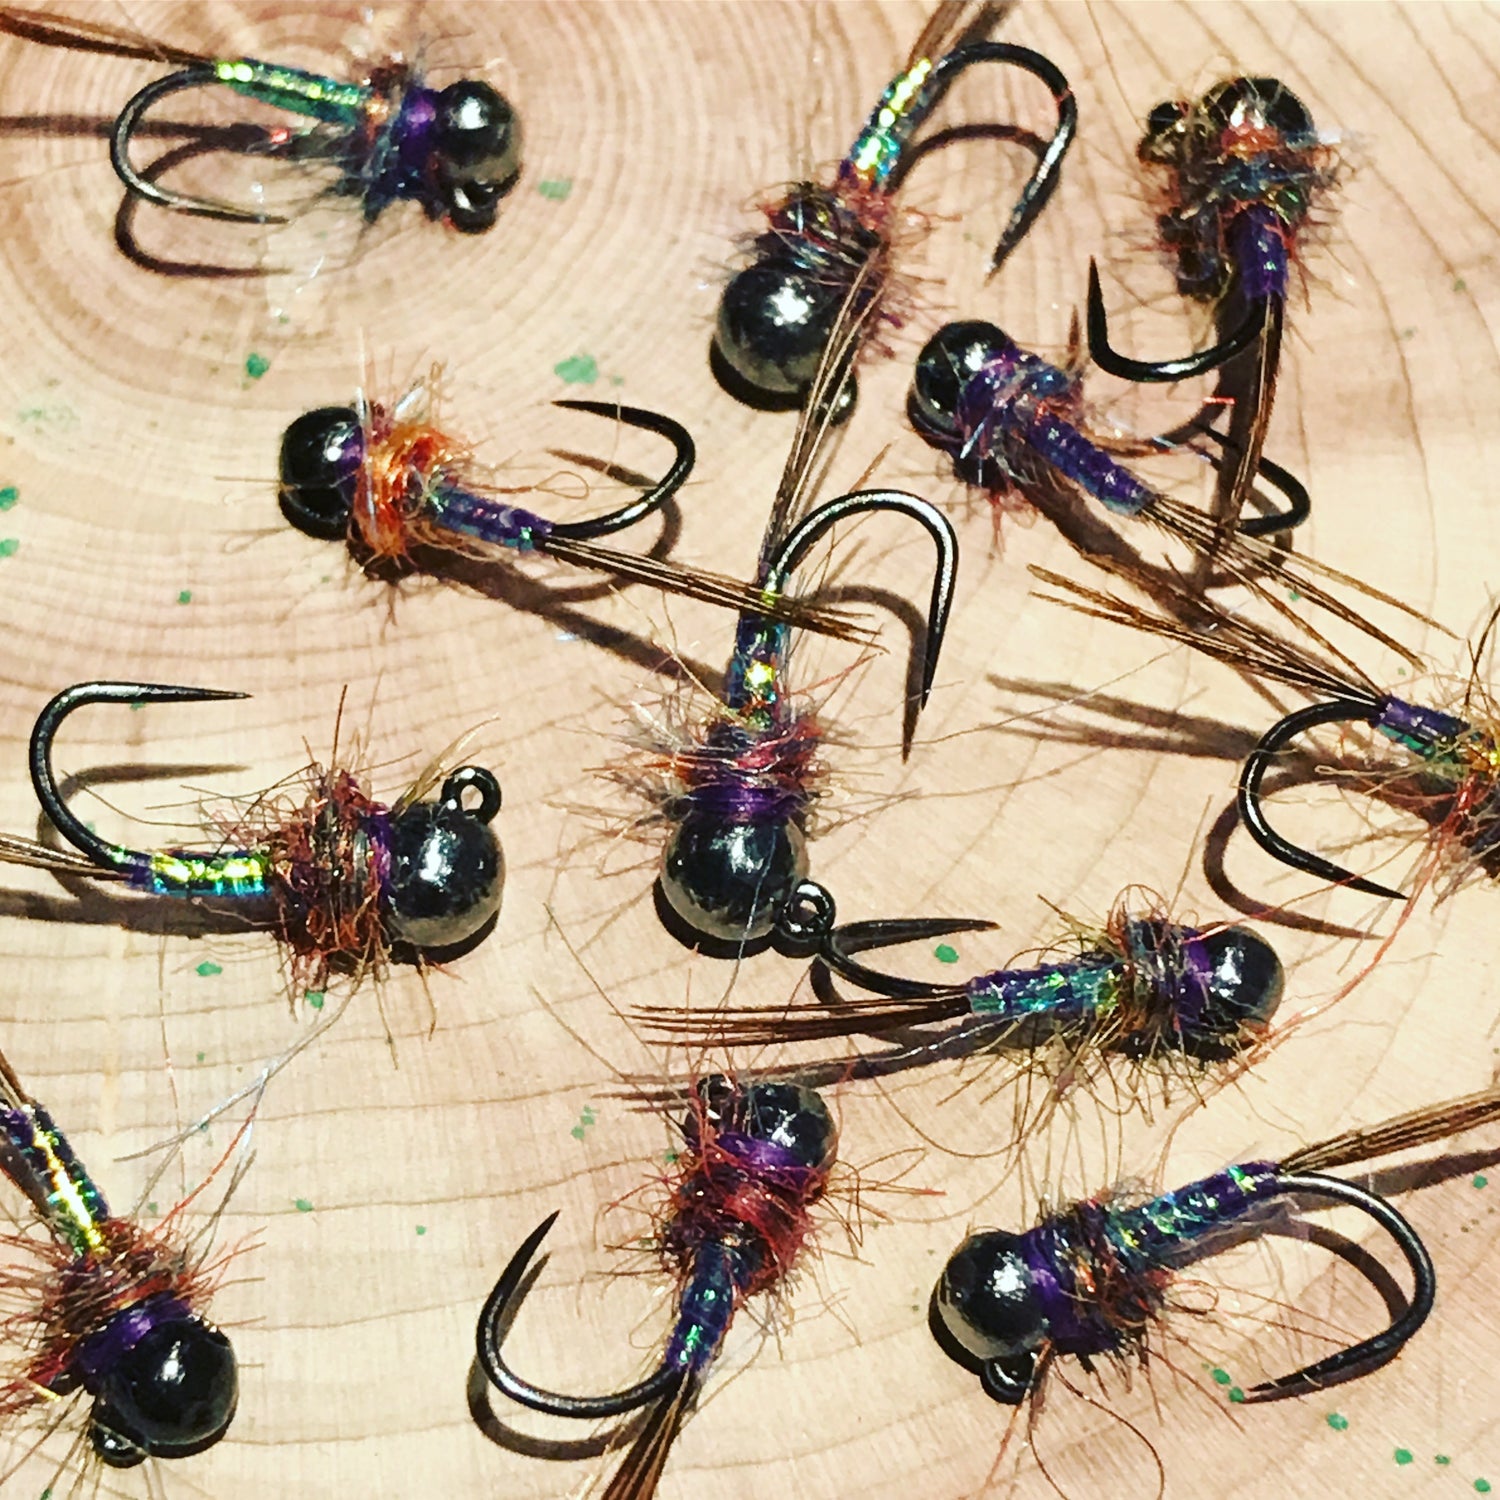 A dozen purple reign trout flies on barbless jigged hooks